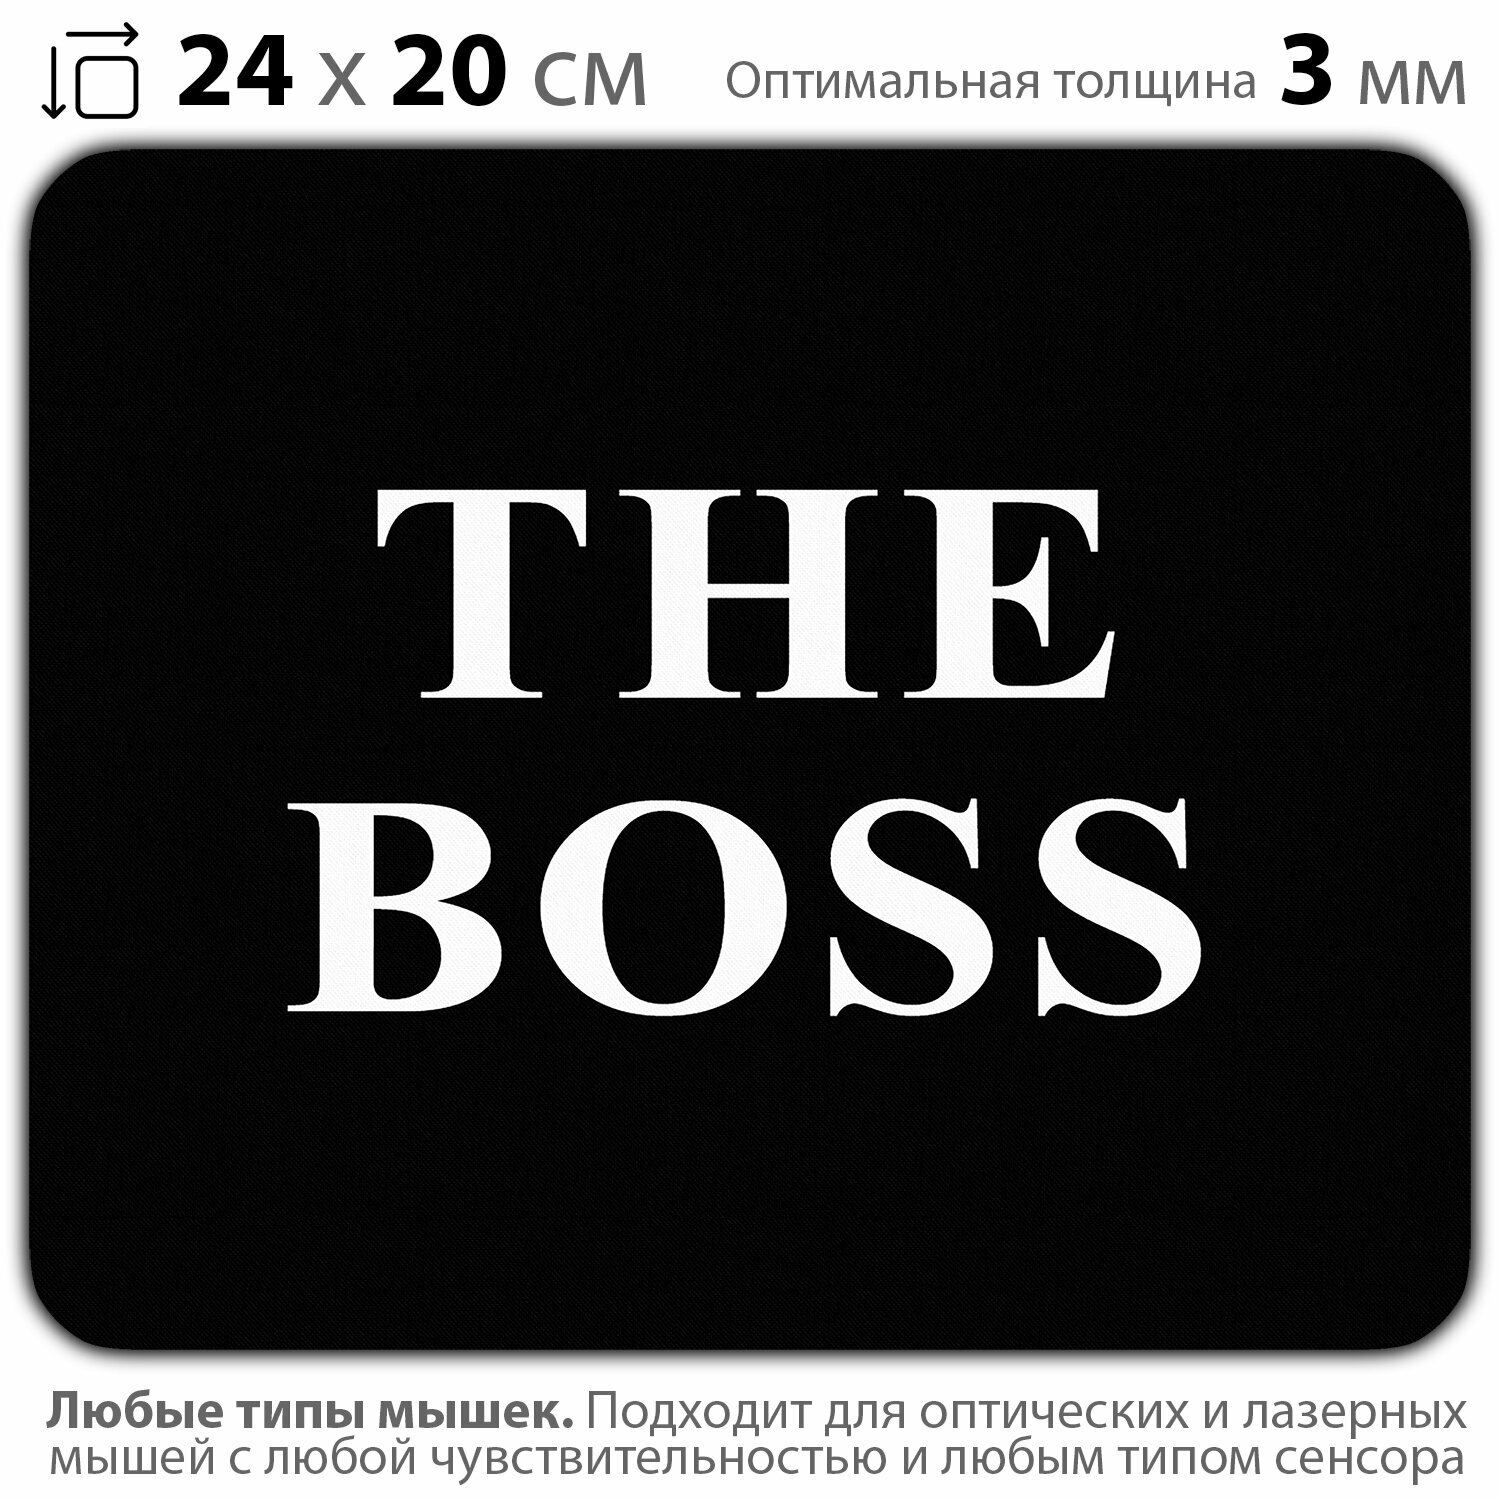 Коврик для мыши "Коврик начальника. The Boss" (24 x 20 см x 3 мм)